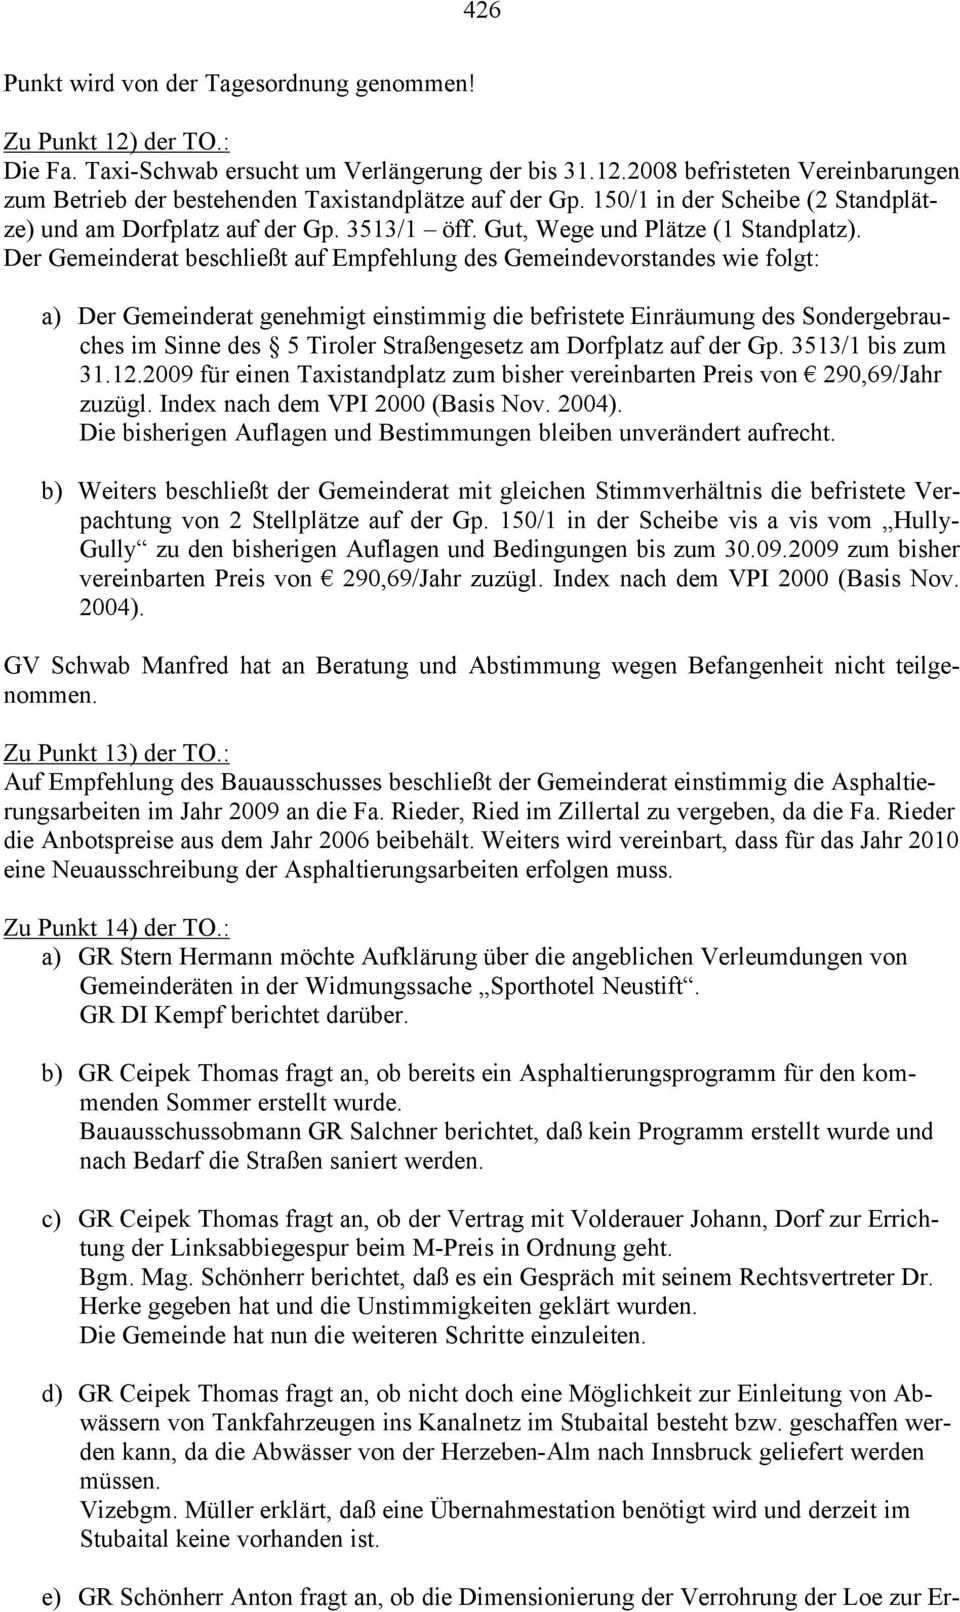 Der Gemeinderat beschließt auf Empfehlung des Gemeindevorstandes wie folgt: a) Der Gemeinderat genehmigt einstimmig die befristete Einräumung des Sondergebrauches im Sinne des 5 Tiroler Straßengesetz